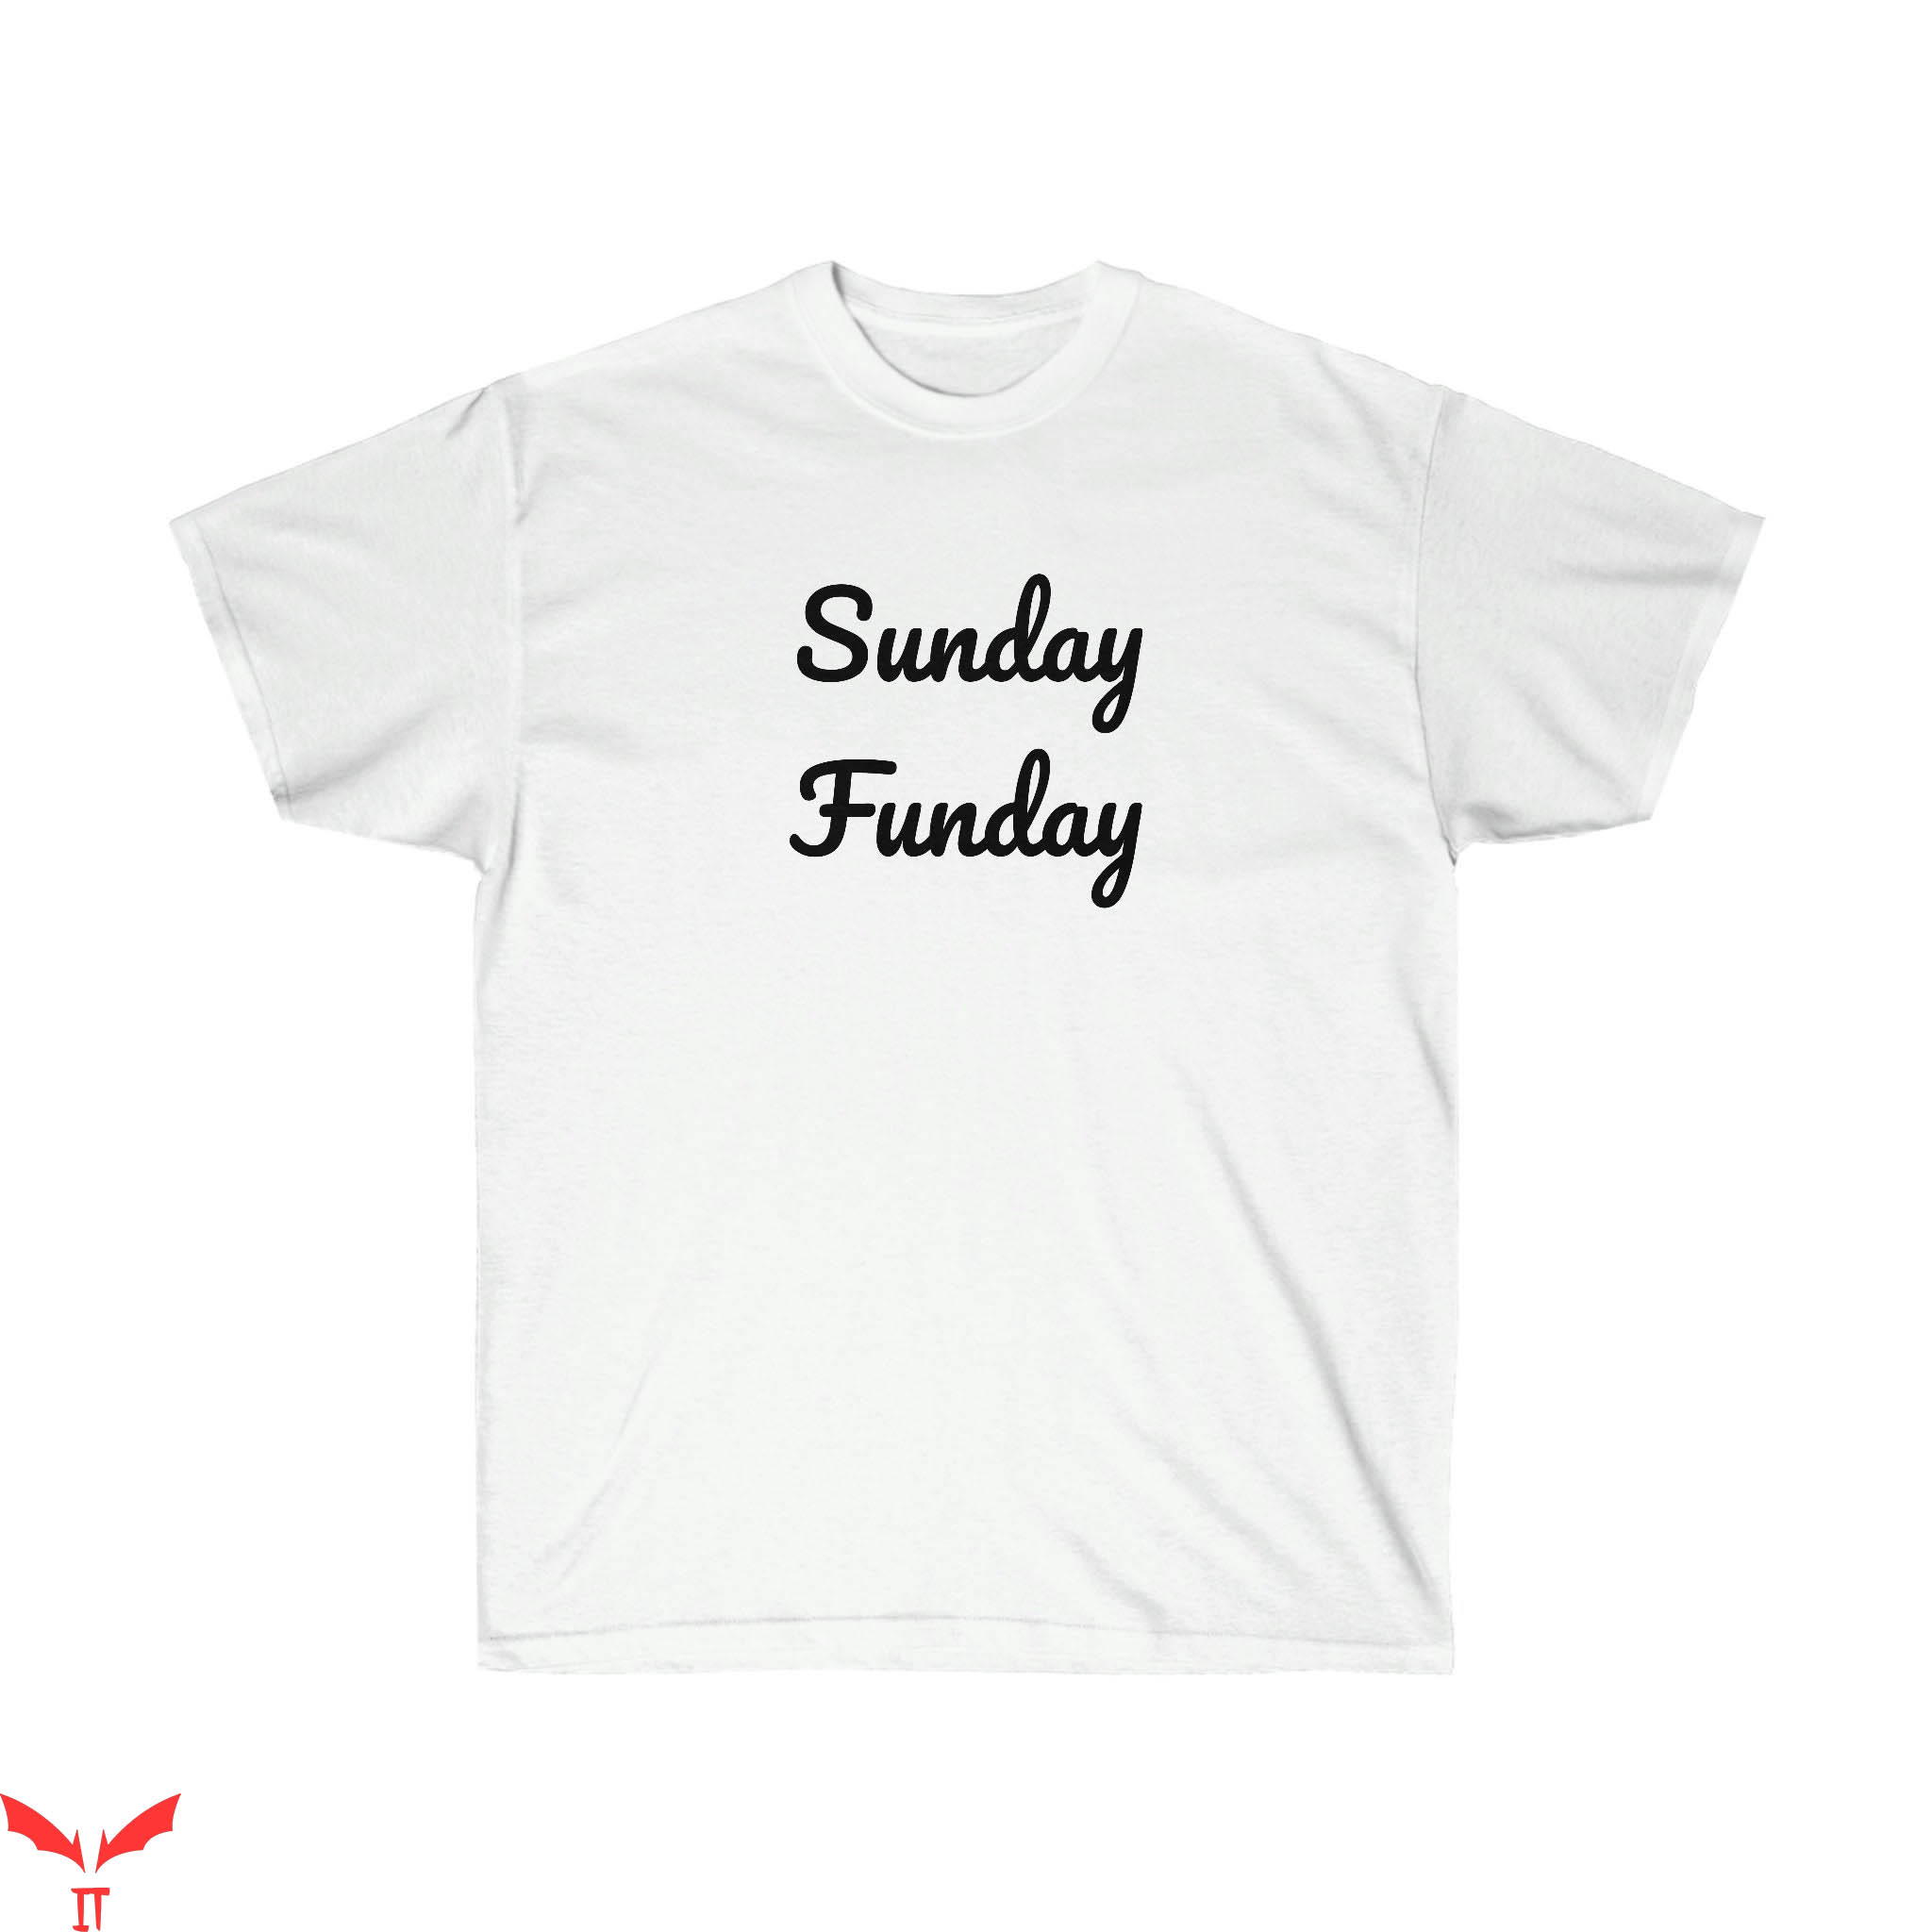 Sunday Funday T-Shirt Sunday Funday Weekend Tee